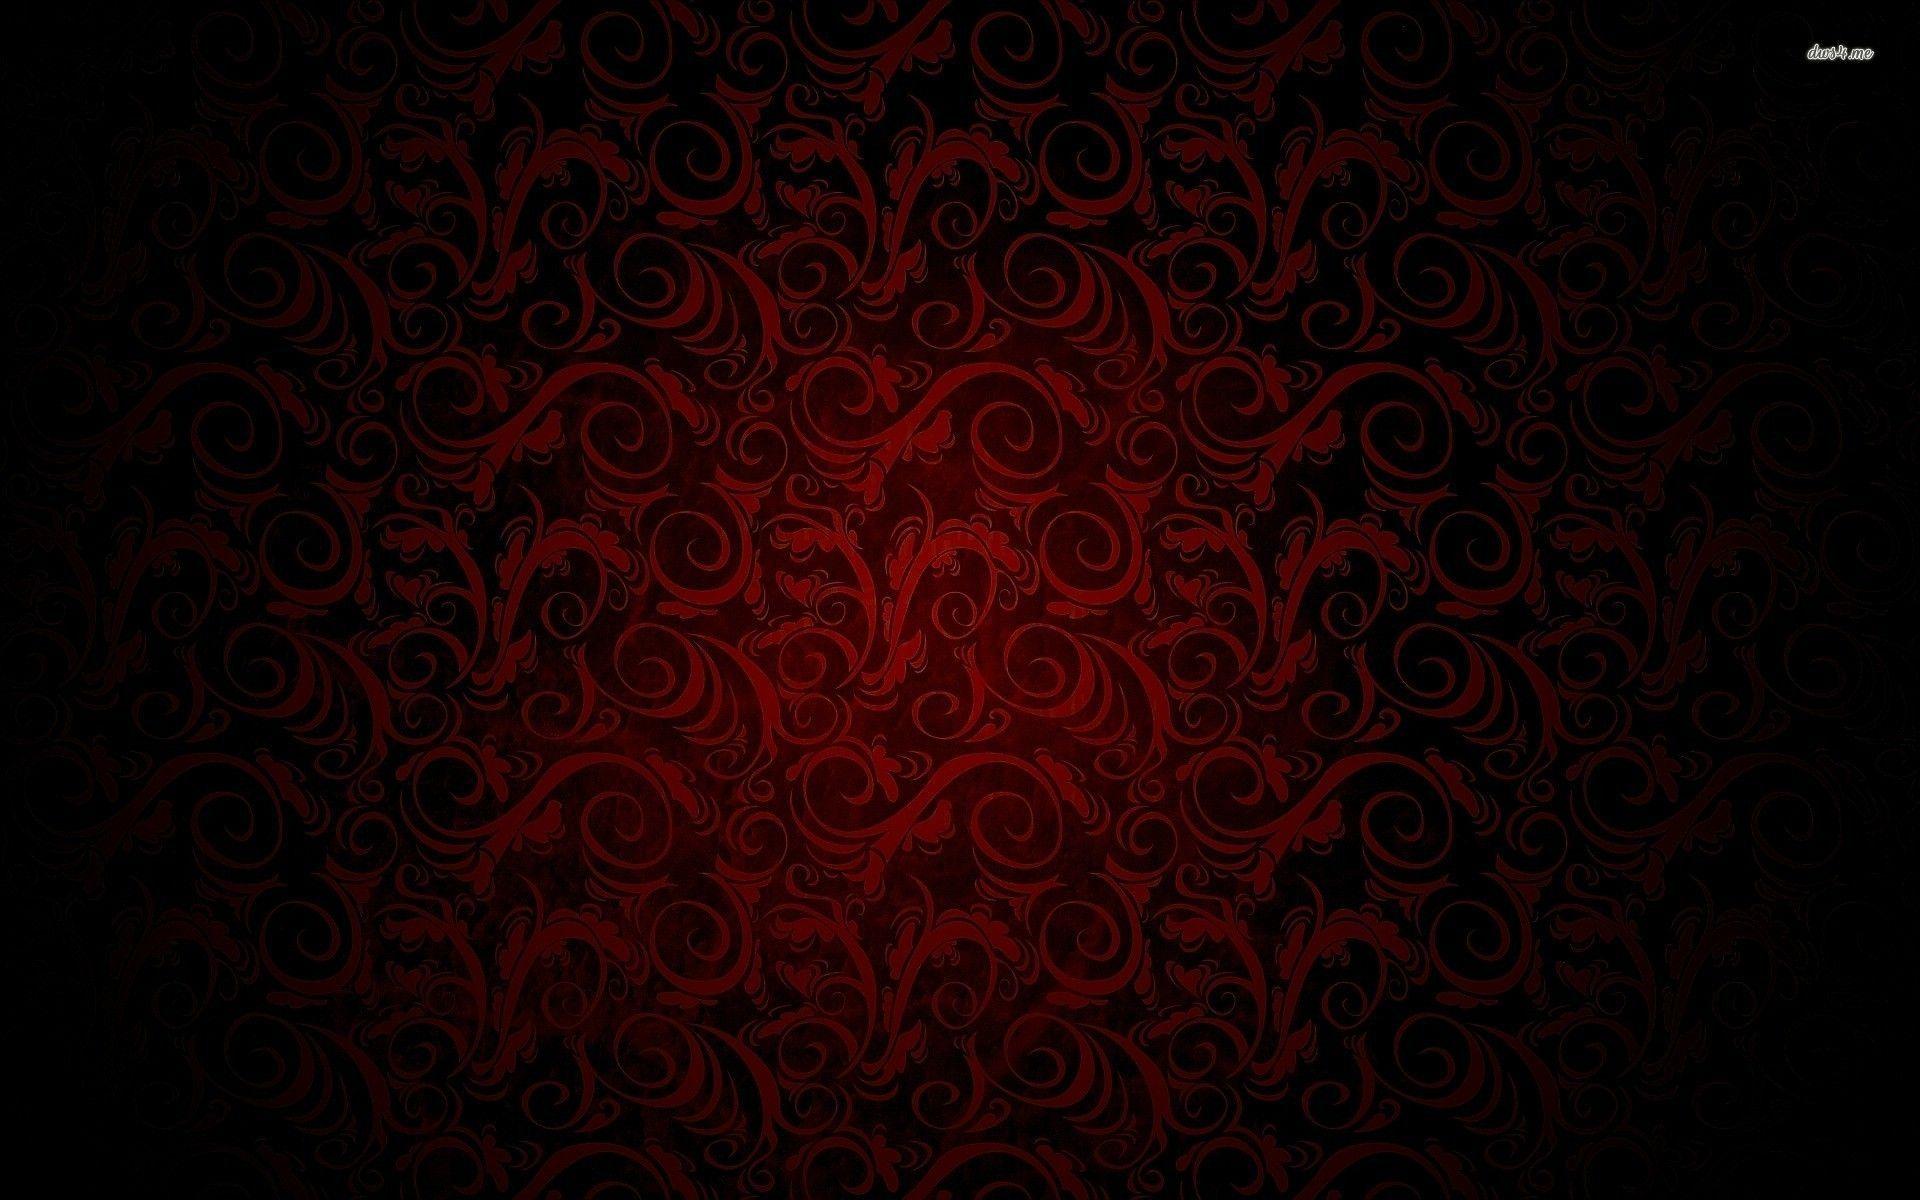 1920x1200 Hình nền hoa văn màu đen và đỏ hoàng gia xoay.  Hoa văn hoàng gia